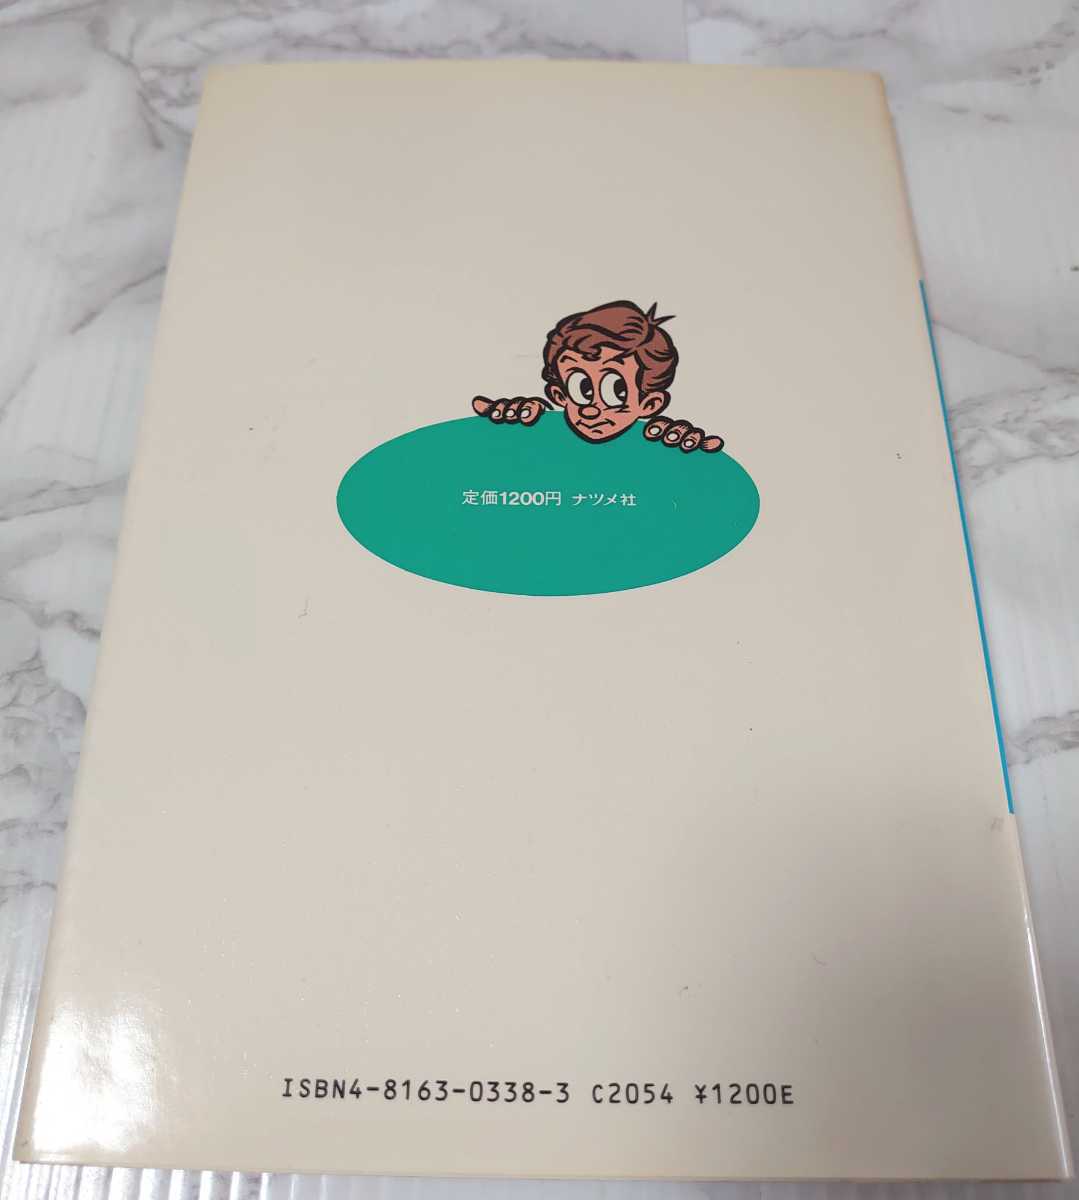 1983 год выпуск!FM-7 лес kun. игра * коллекция : personal computer